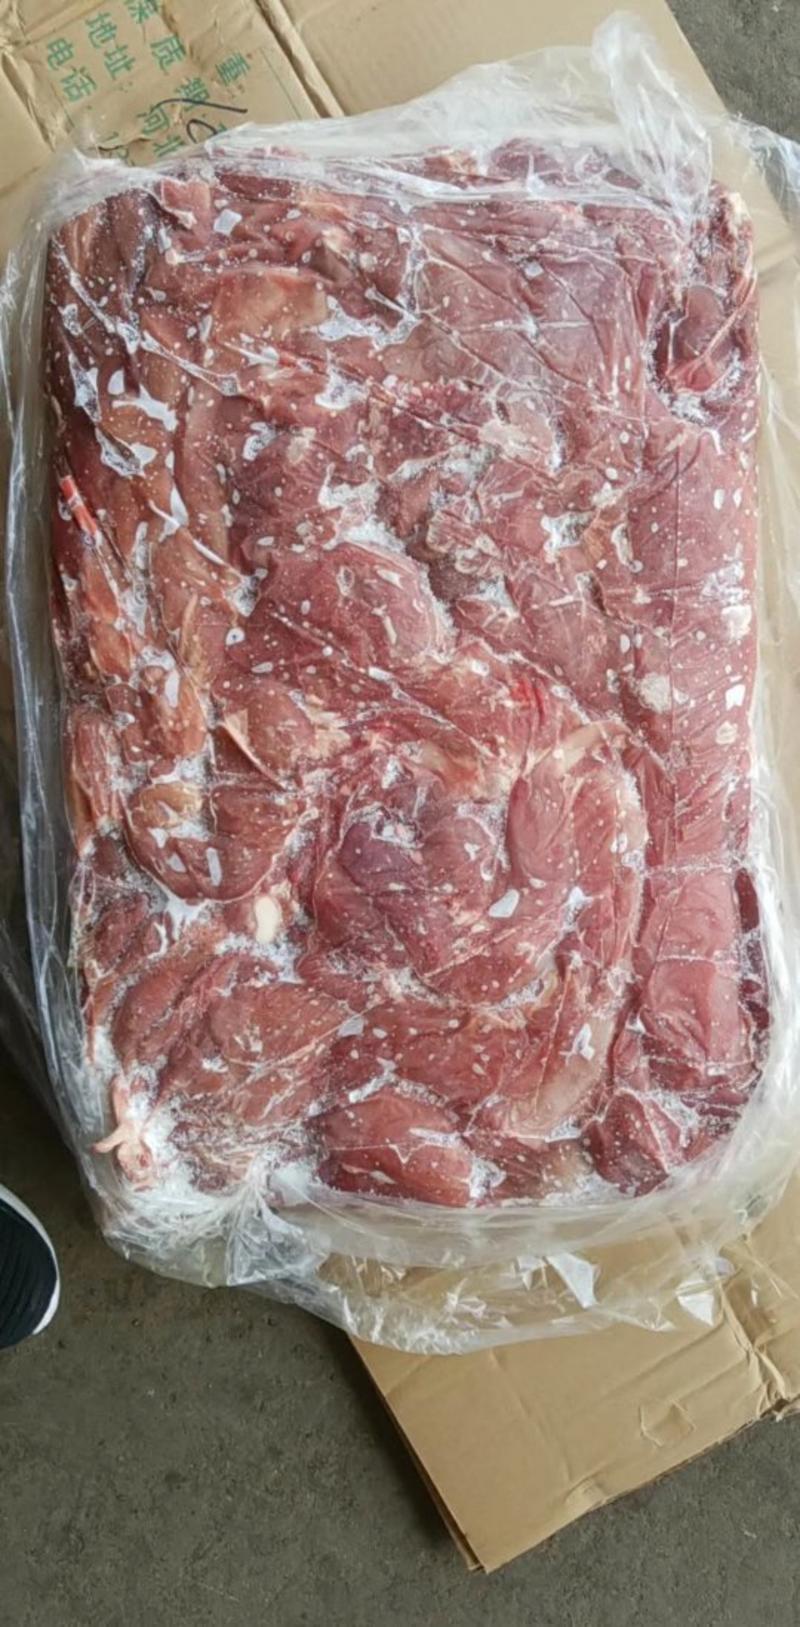 冷冻小牛肉板可穿串可炒菜涮锅常年加工乳牛分割产品